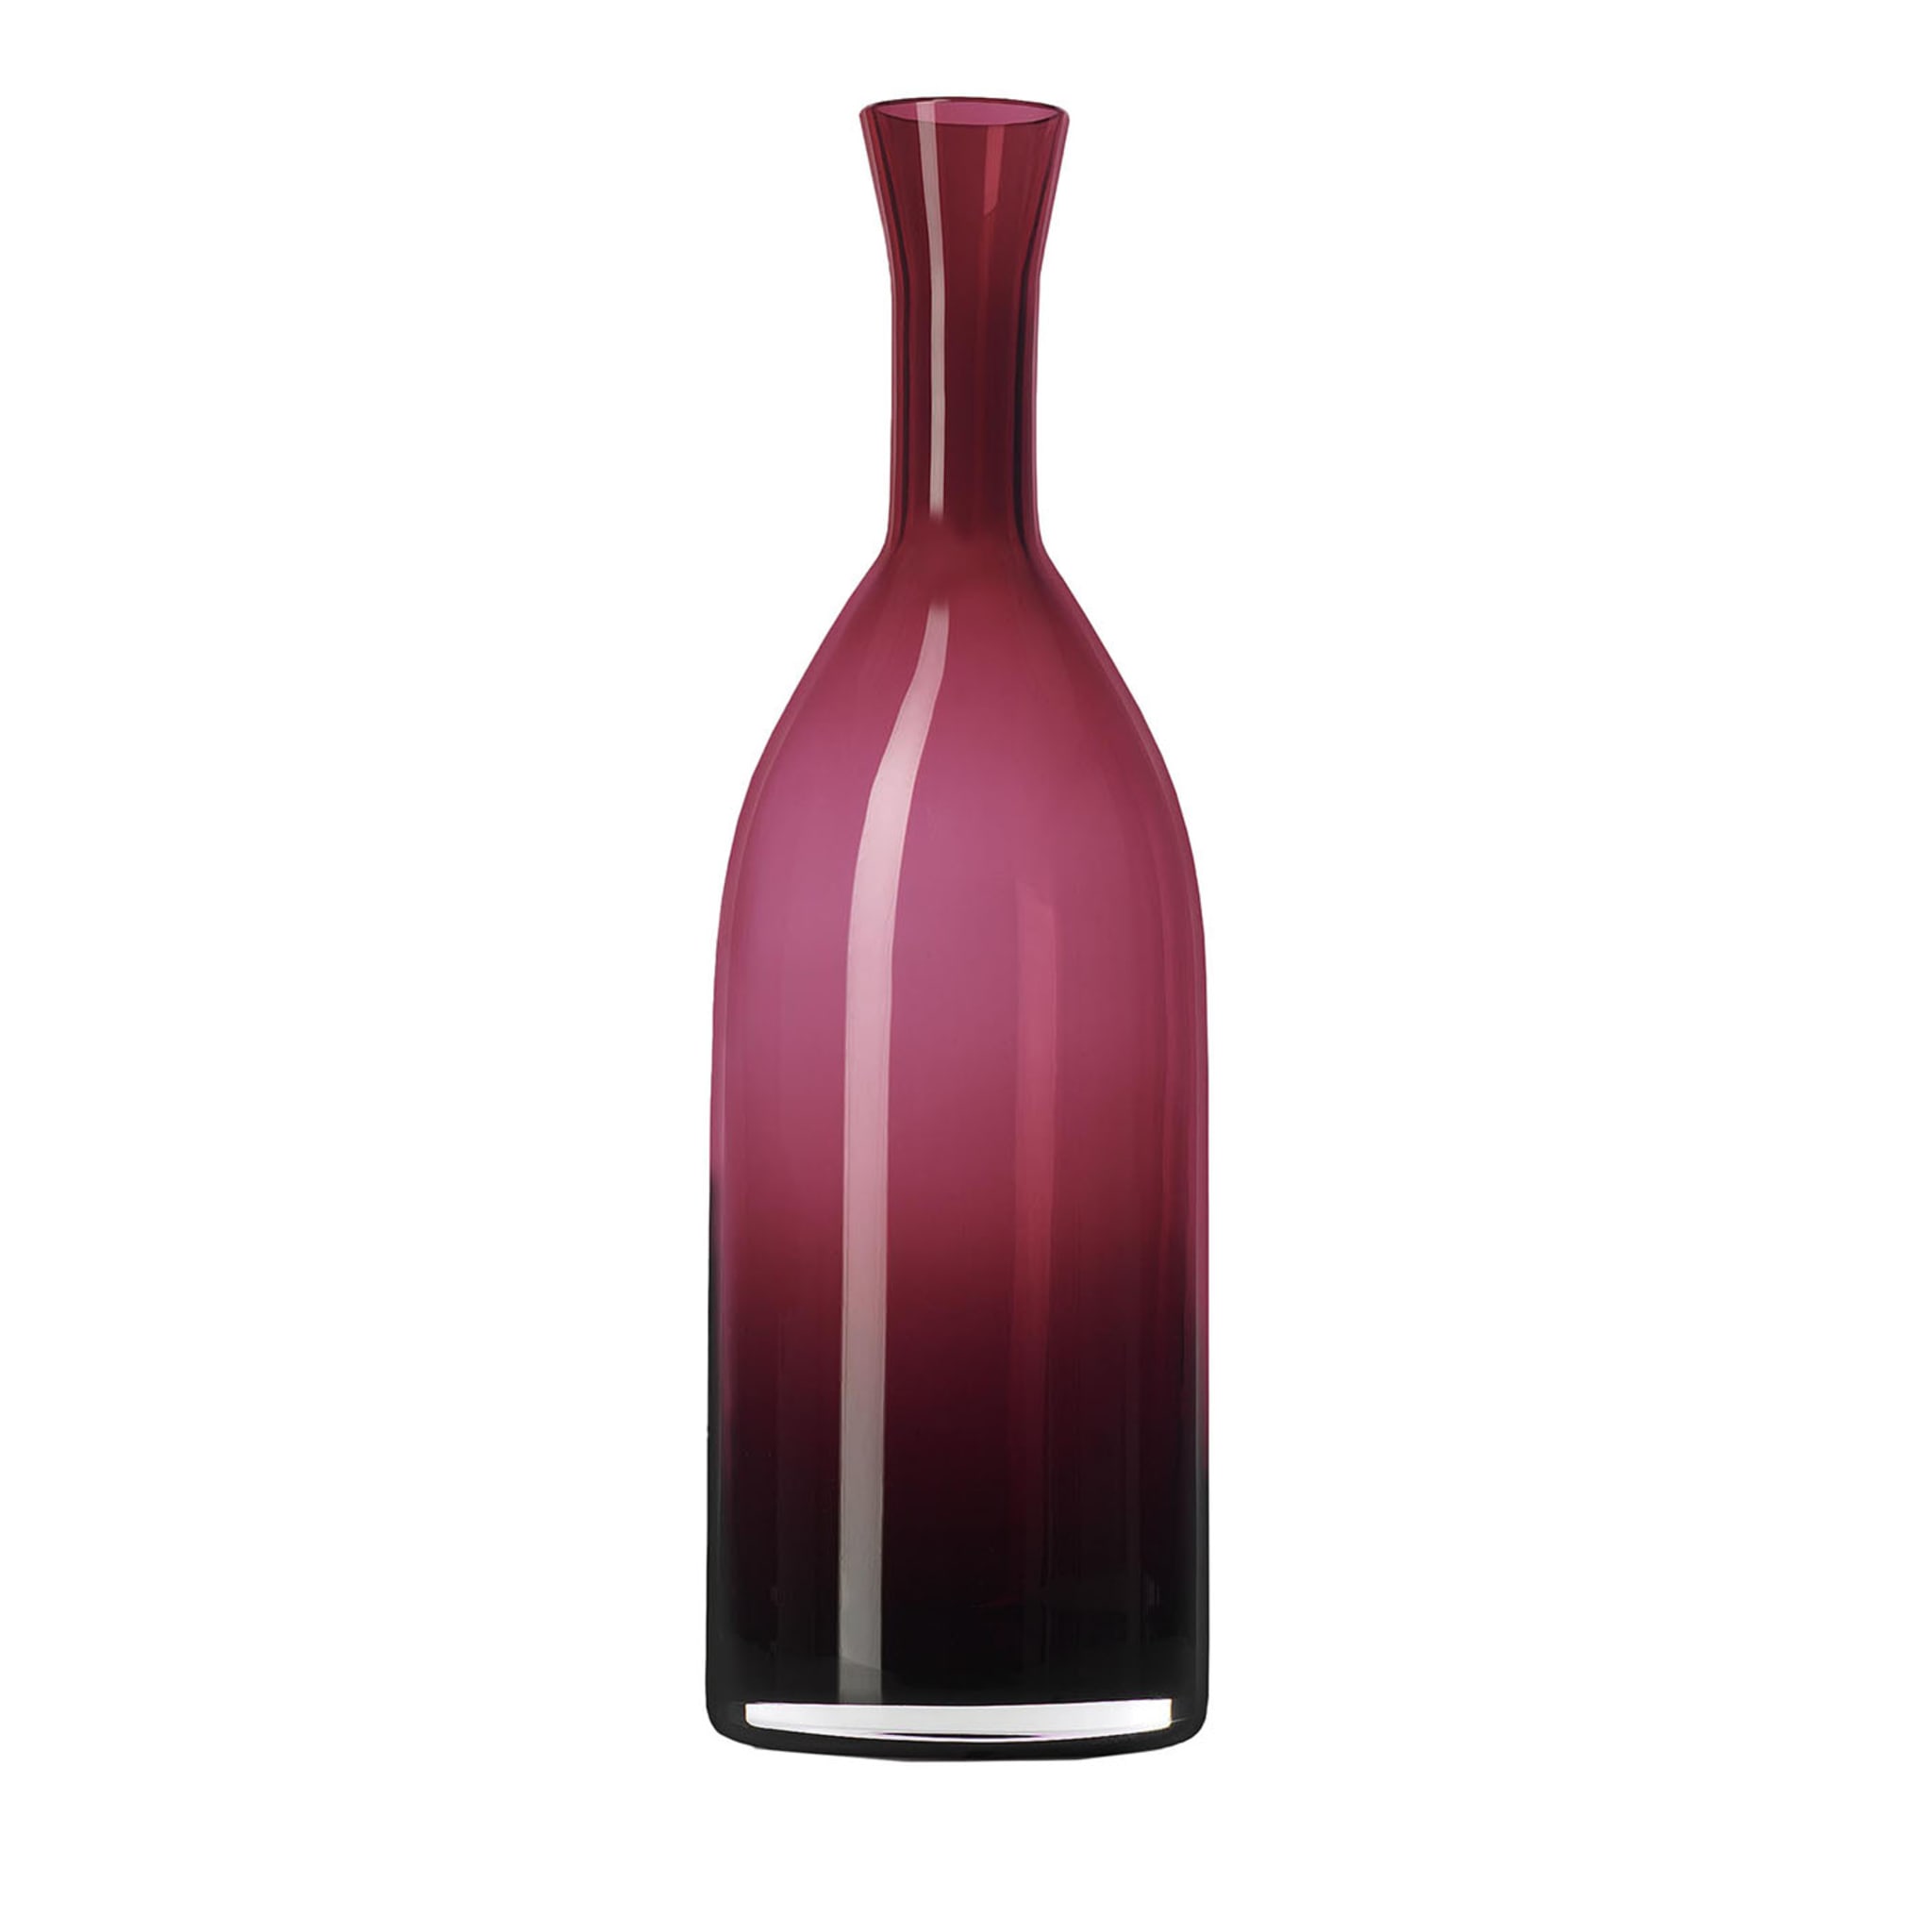 Morandi N.11 Rubinrote dekorative Flasche - Hauptansicht